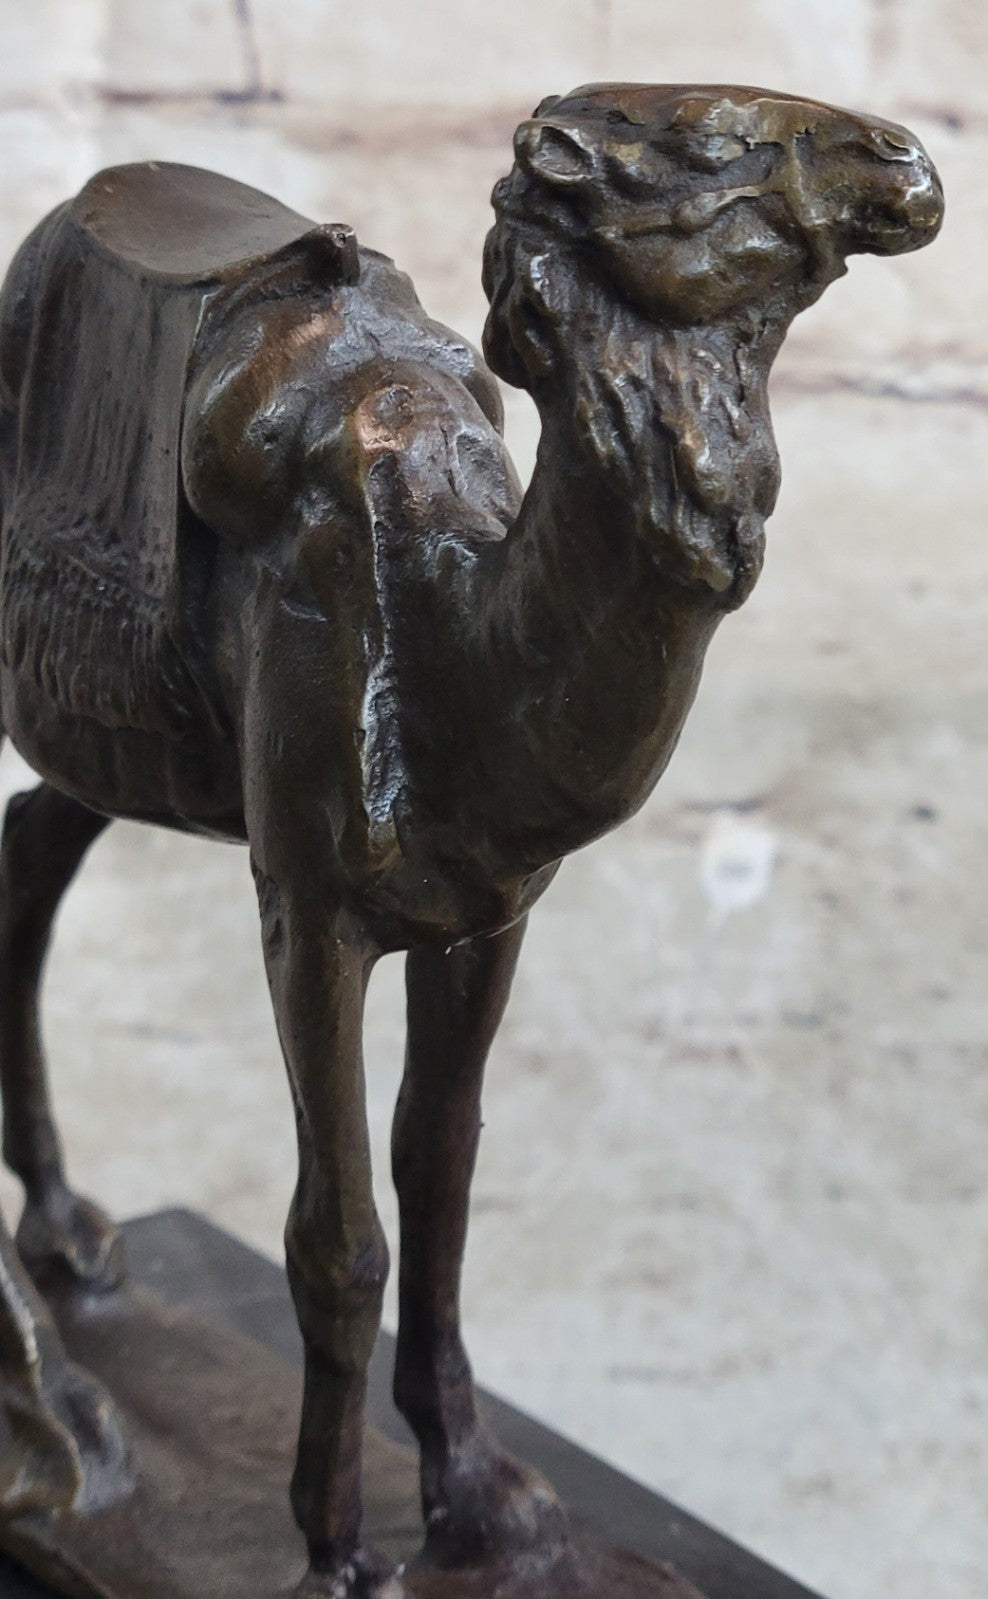 Handcrafted bronze sculpture SALE Marble Deco Art Desert Journey Camel Figurine